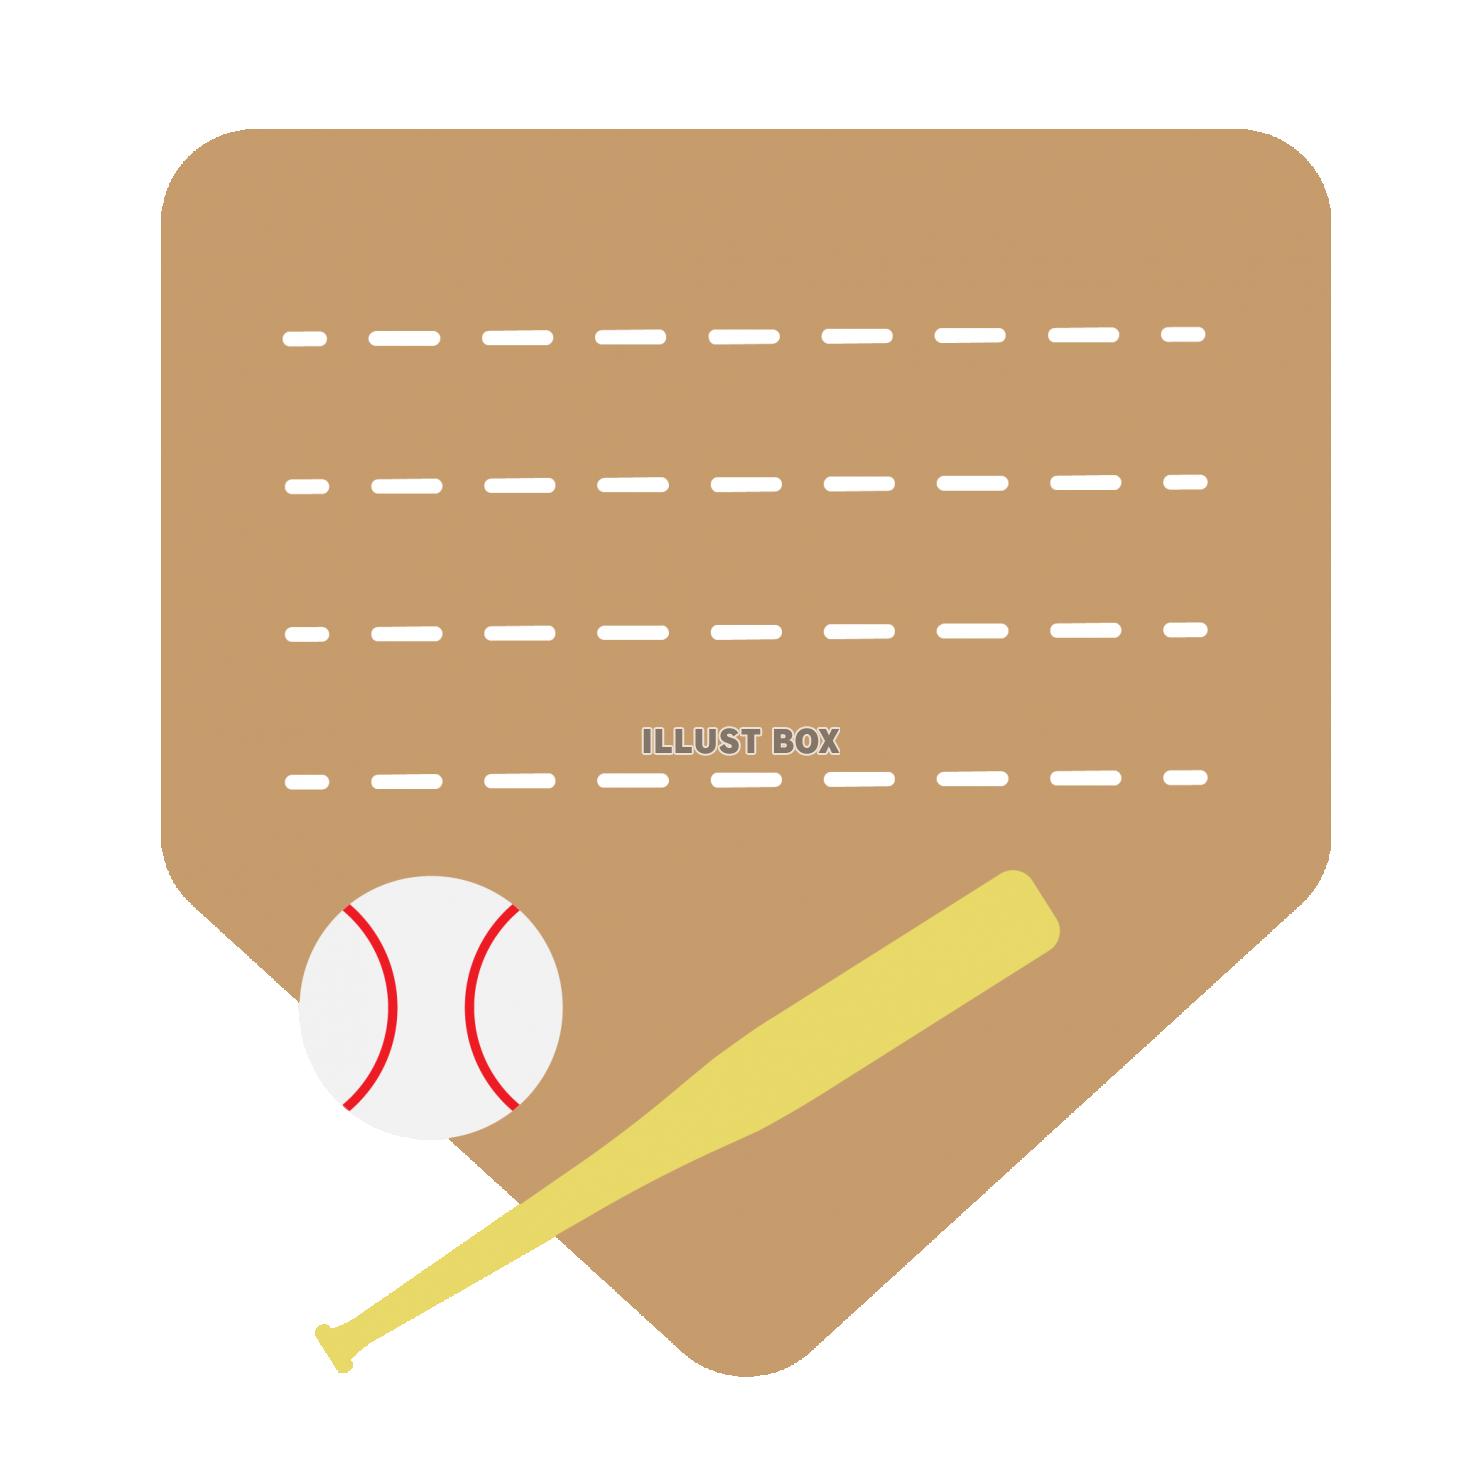 バットとボールで飾ったベース型の野球メッセージカード01